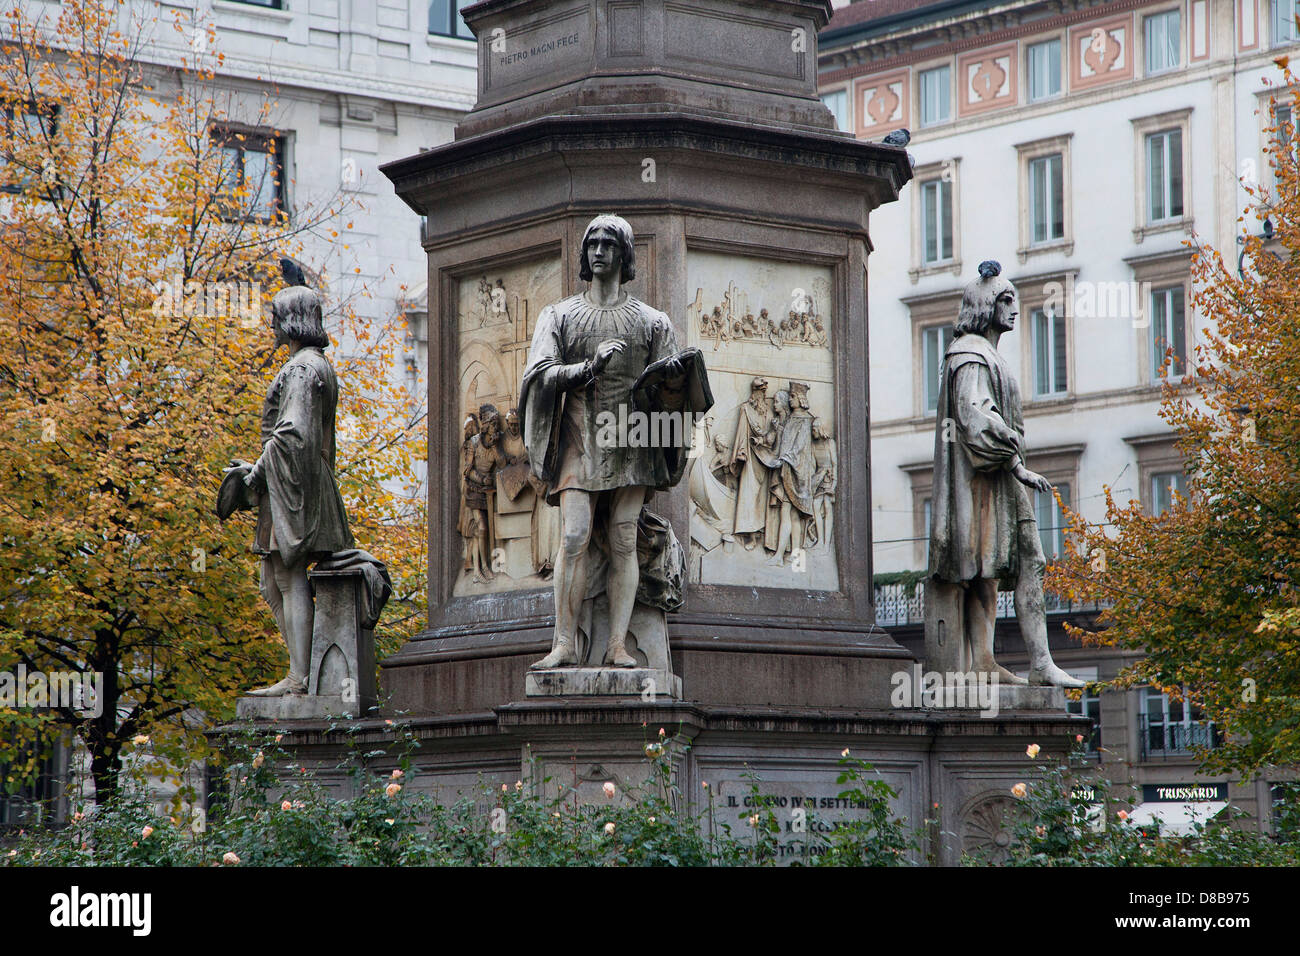 Un monument situé à Leonardo da Vinci à Piazza Scala de Milan, Italie. Banque D'Images